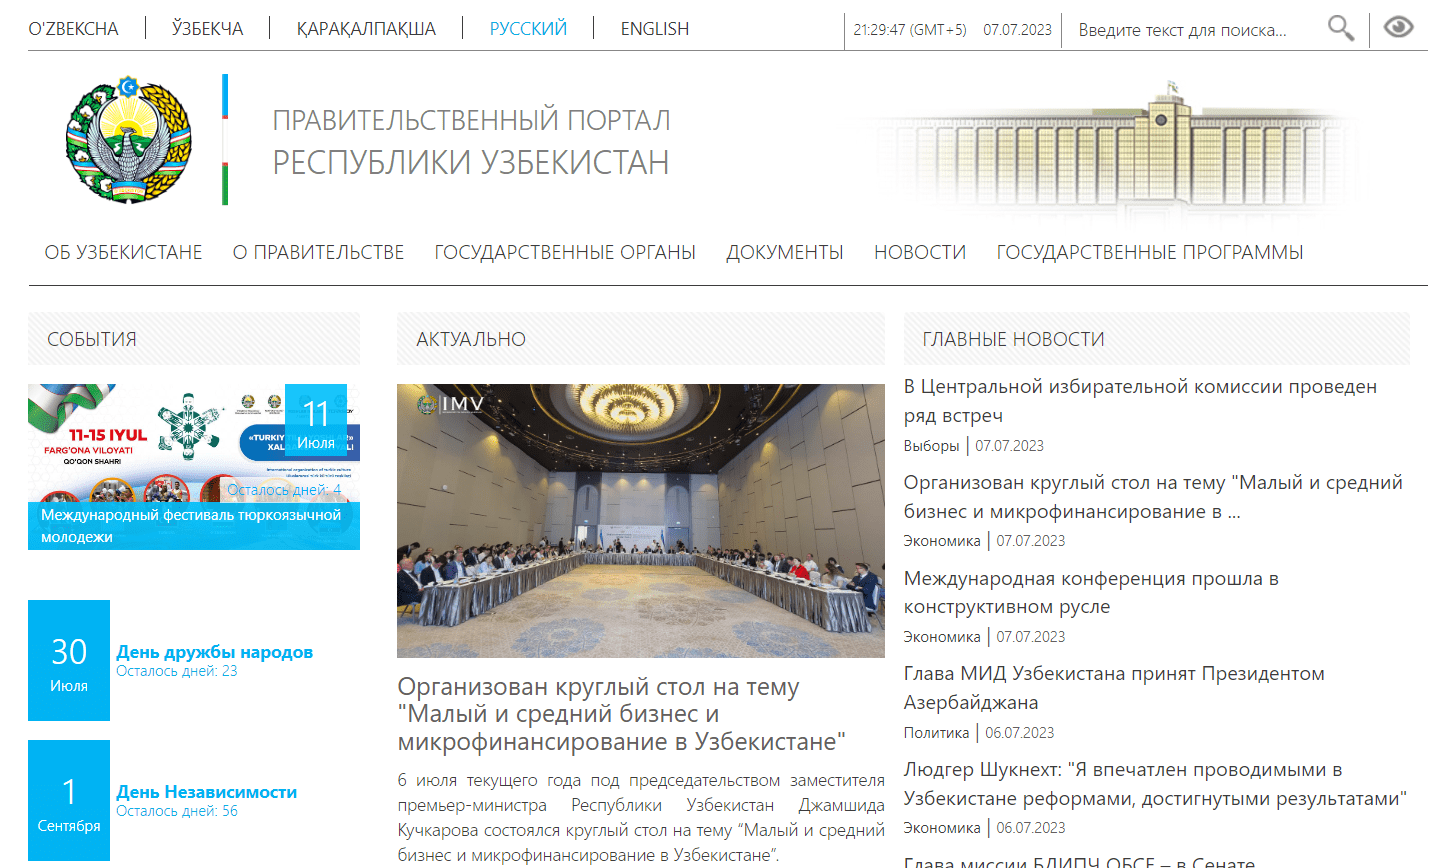 Правительственный портал Республики Узбекистан (gov.uz) - официальный сайт